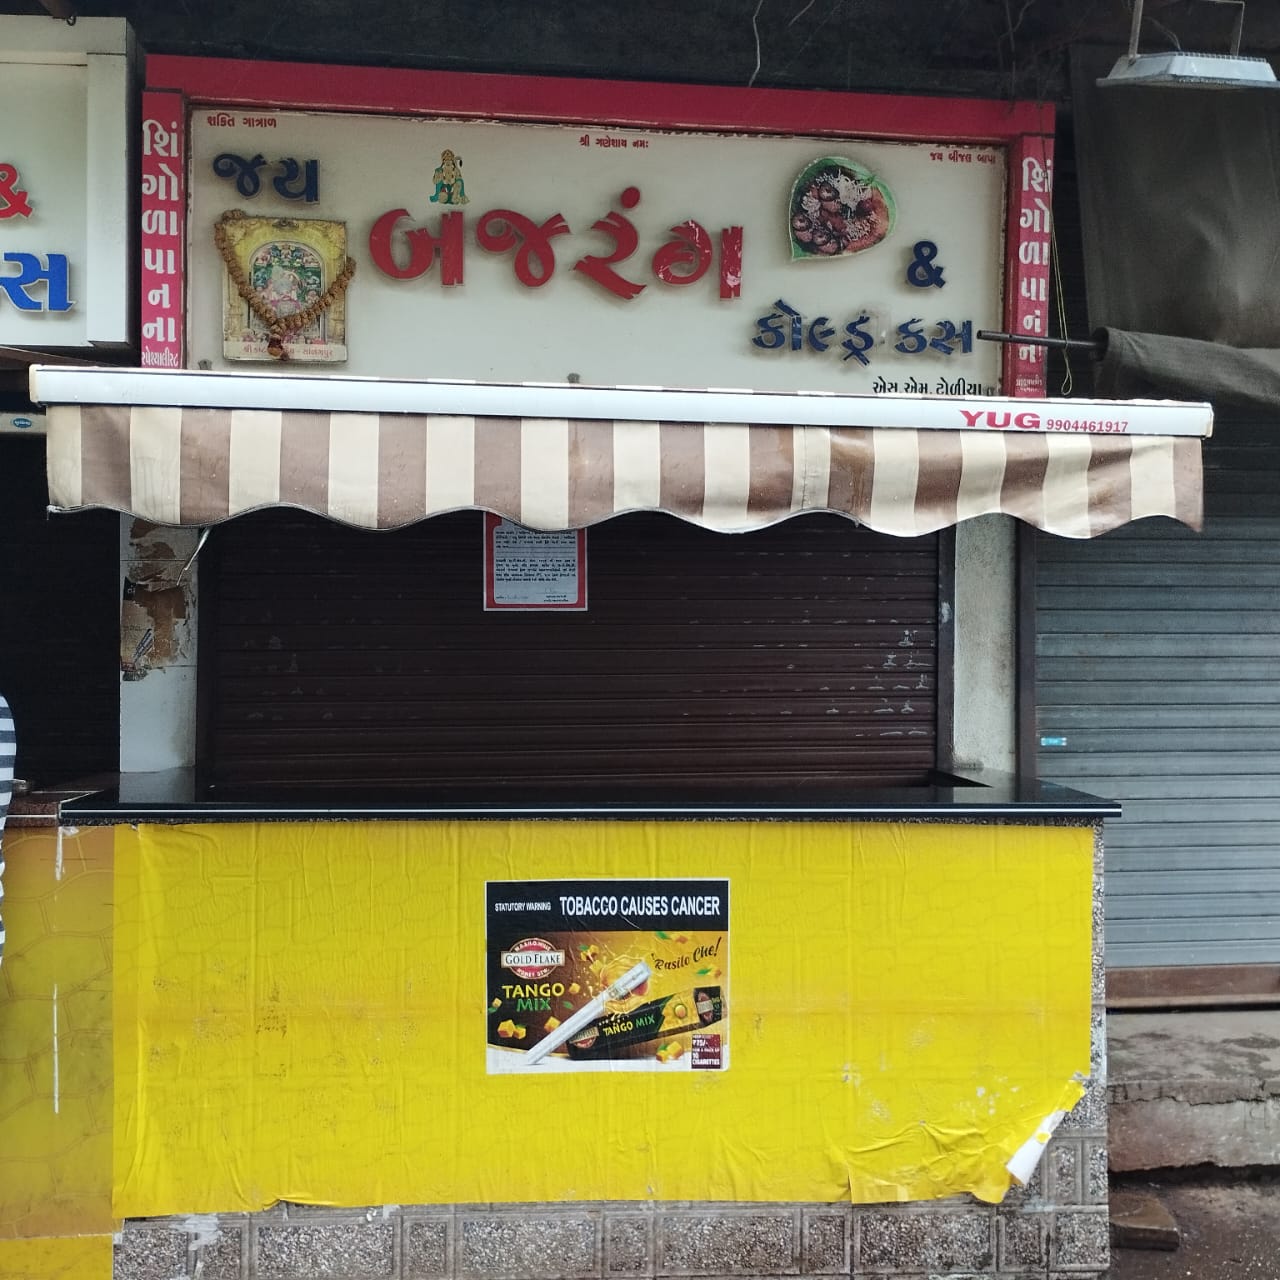 રાજકોટ મનપા દ્વારા જાહેરમાં ગંદકી કરવા બદલ એકસાથે 8 ચા-પાનની દુકાનોને કરાઇ સીલ